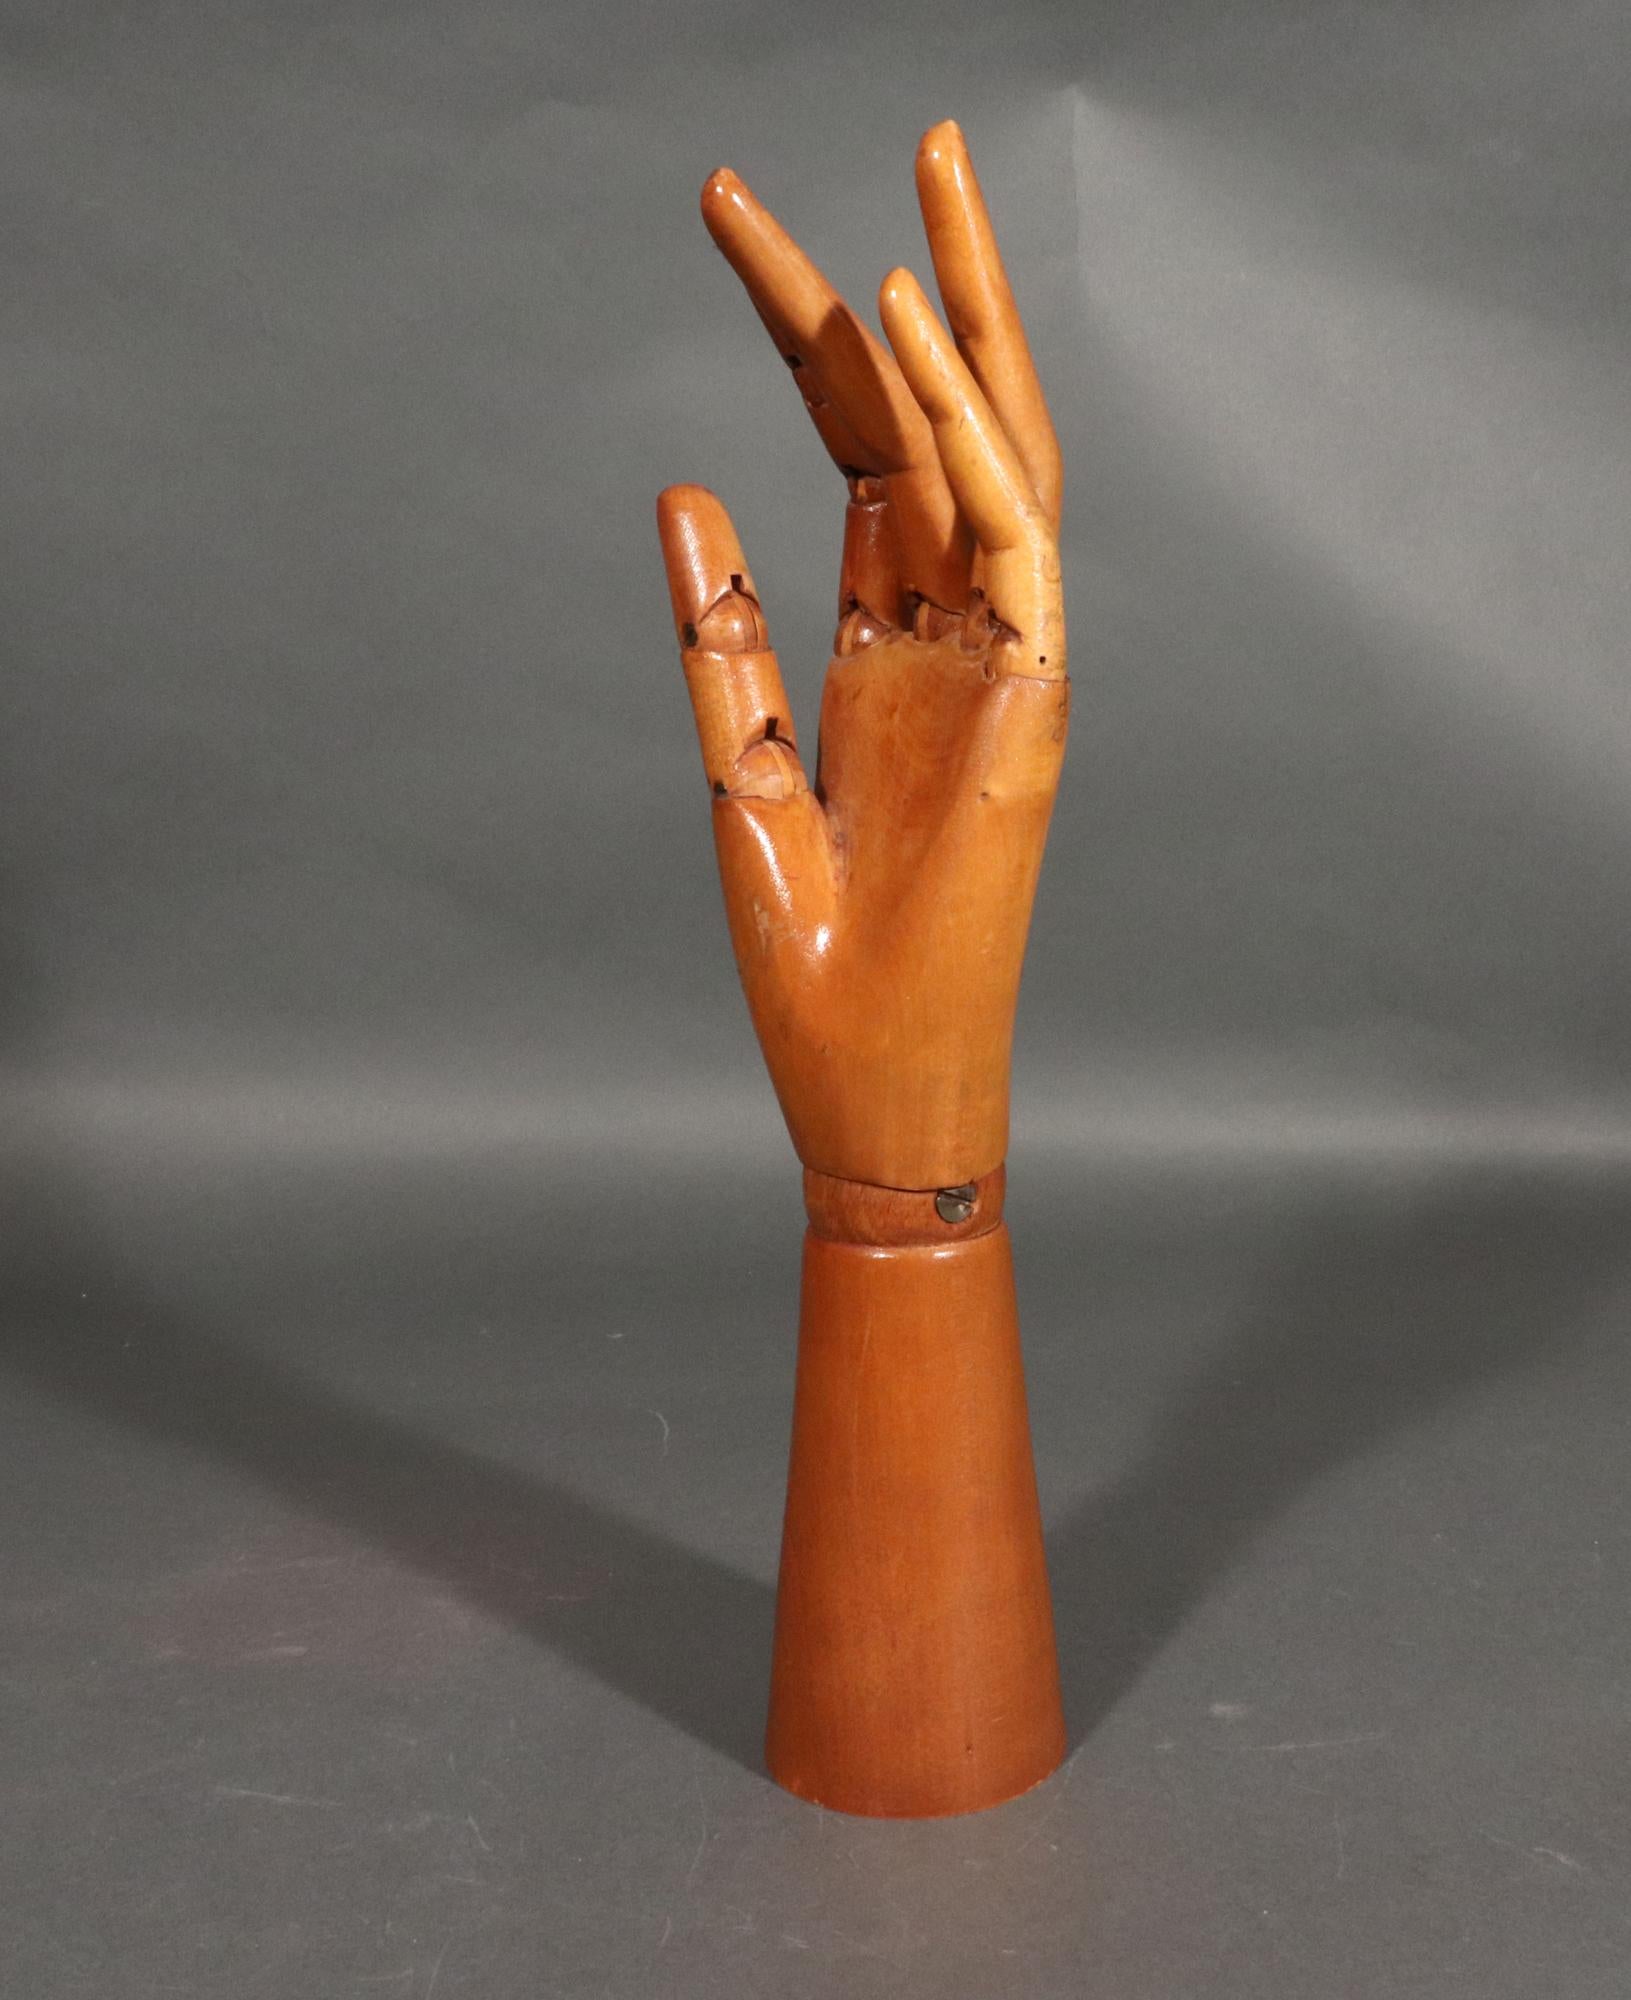 Modèle articulé de main d'artiste en bois,
1950s

La main en bois léger sculpté est articulée au niveau du poignet et de la base de chaque doigt, tandis que l'index et le pouce sont également articulés au niveau de la jointure et que les autres